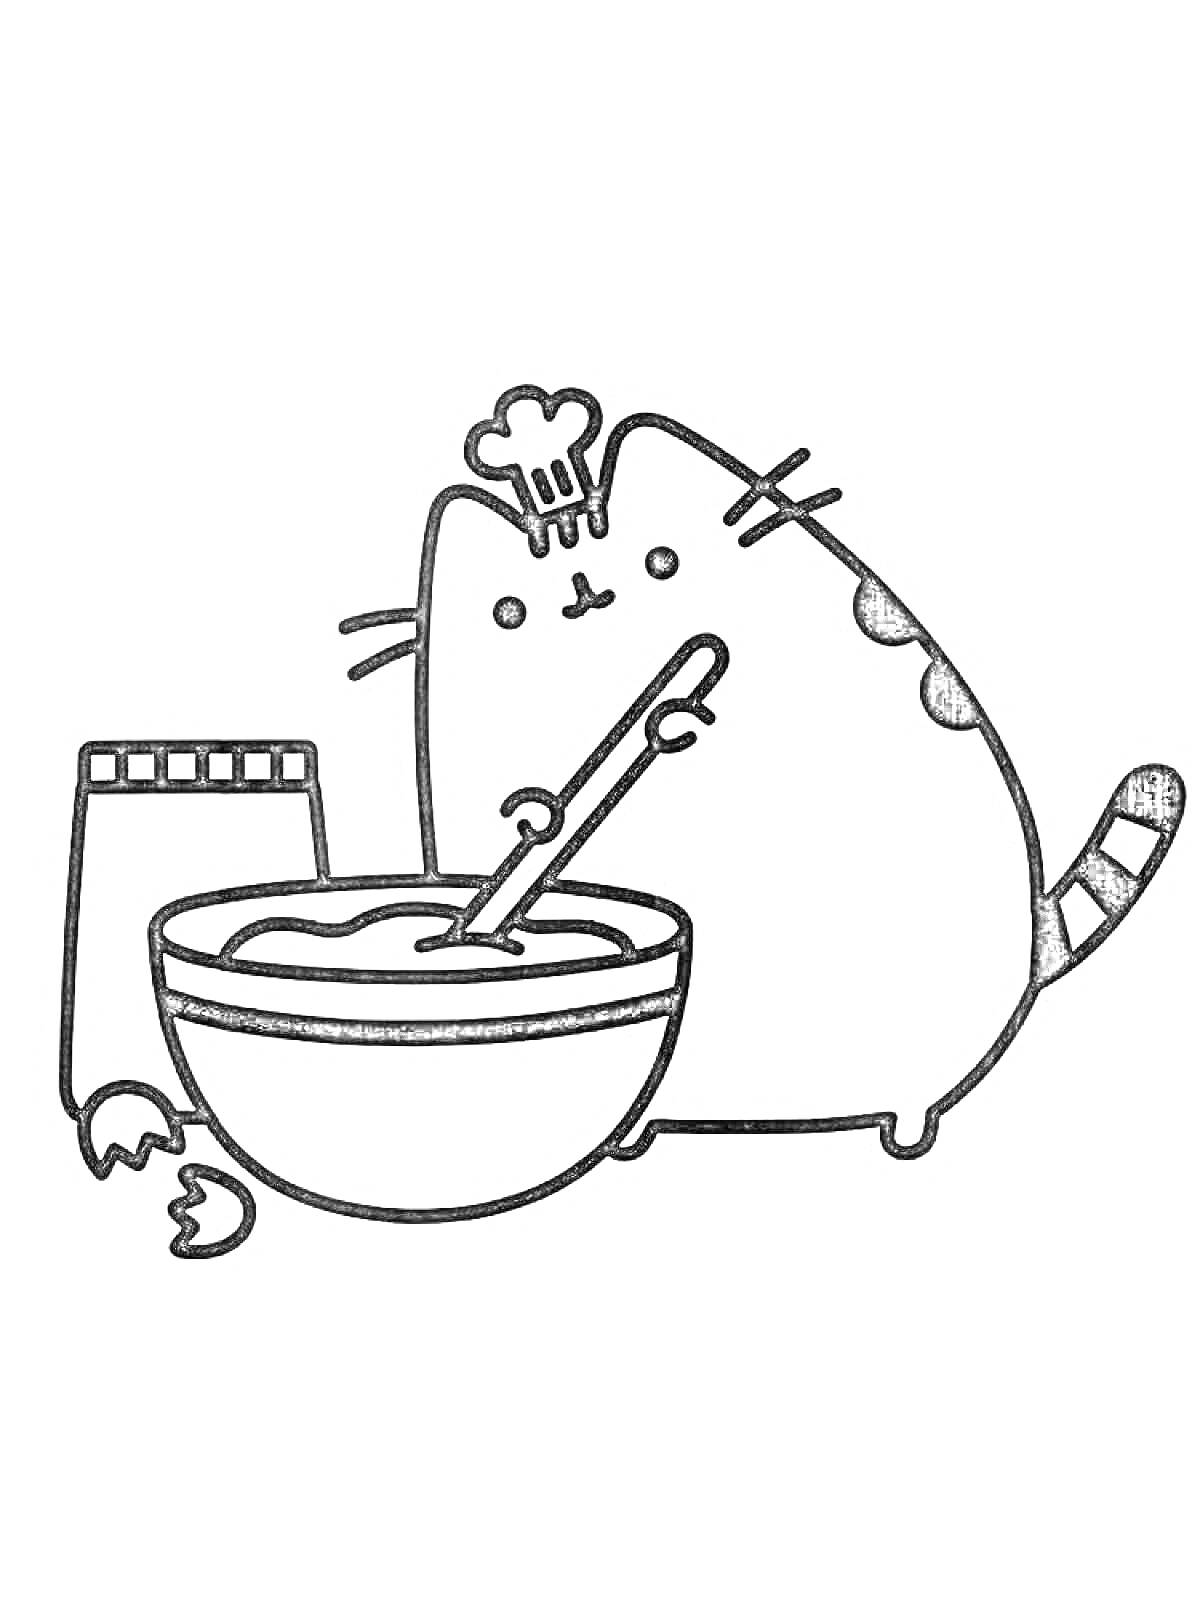 Кот Пушин готовит, мешает тесто в миске, рядом пакет муки и разбитые яйца, кот в поварском колпаке